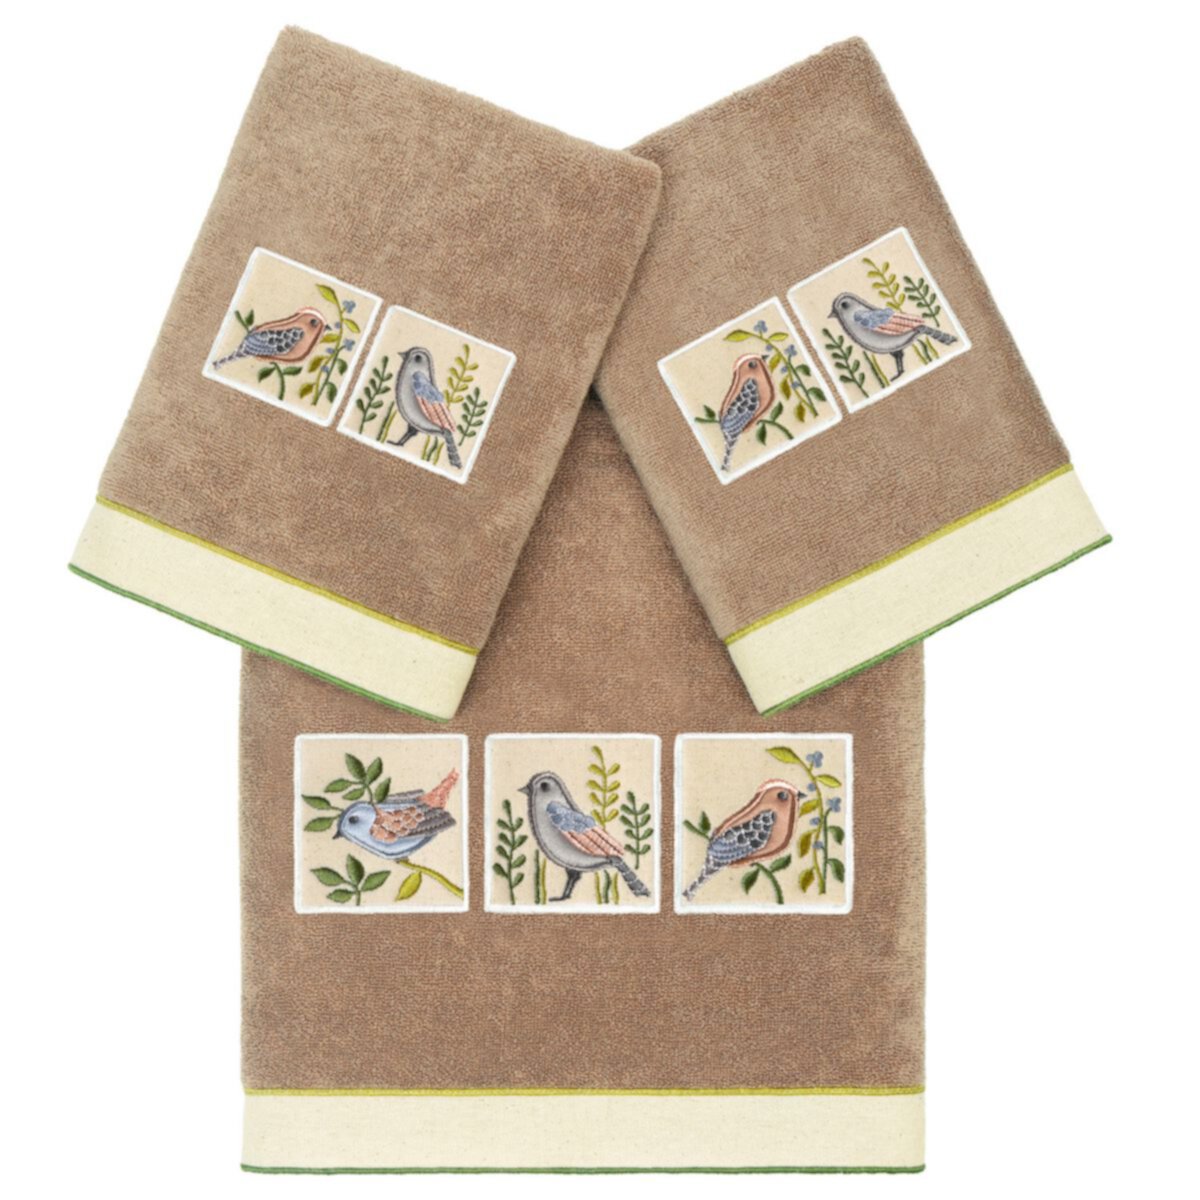 Linum Текстиль для дома Турецкий хлопок Belinda Набор украшенных полотенец из 3 предметов Linum Home